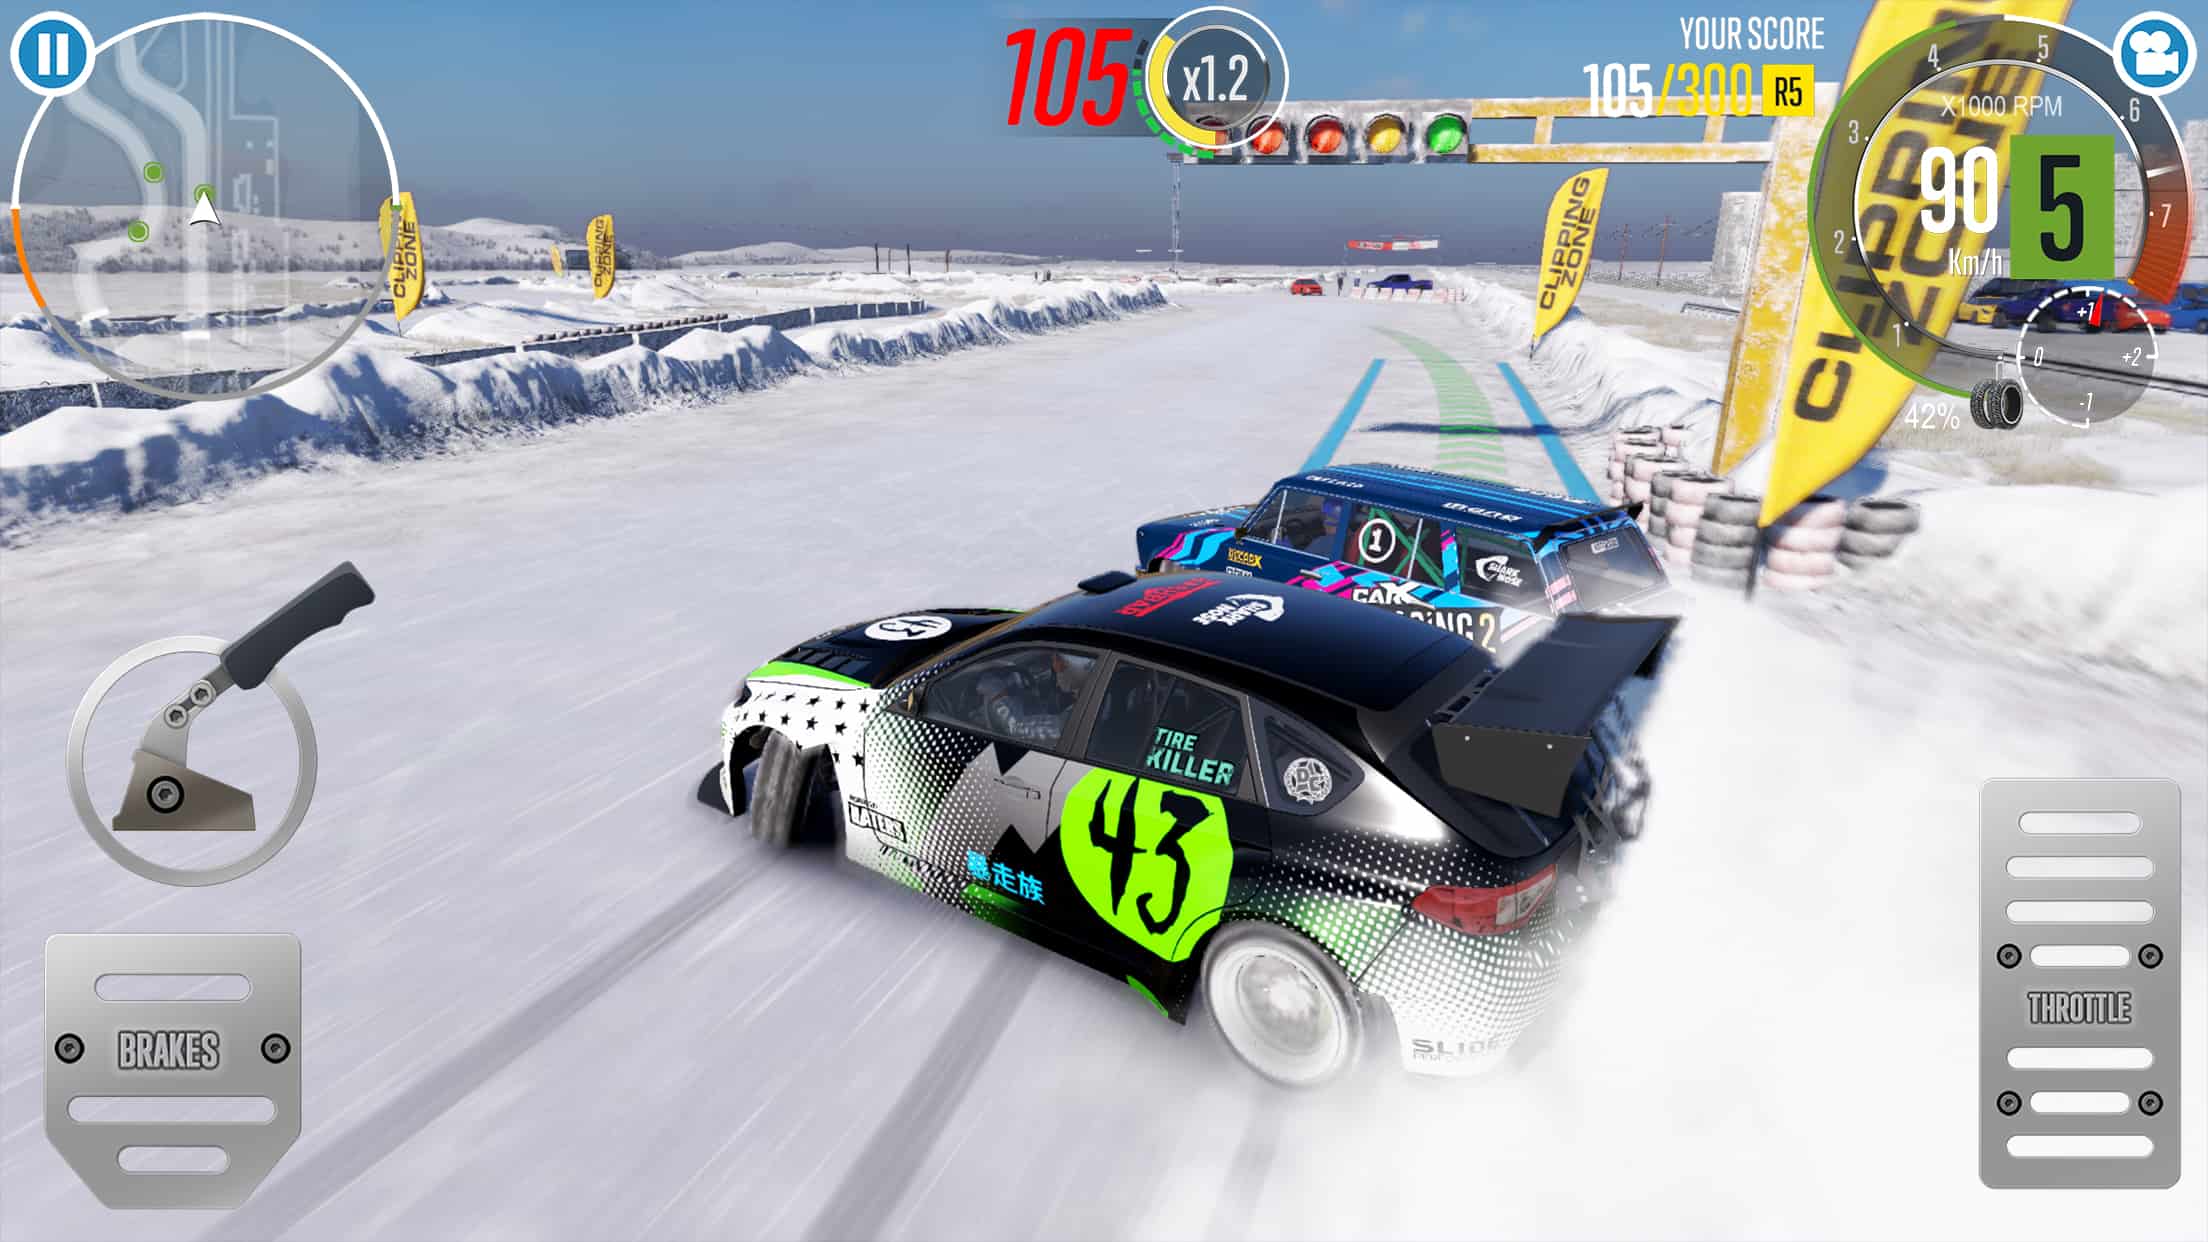 Mengulik Carx Drift Racing 2 Mod Apk Terbaru